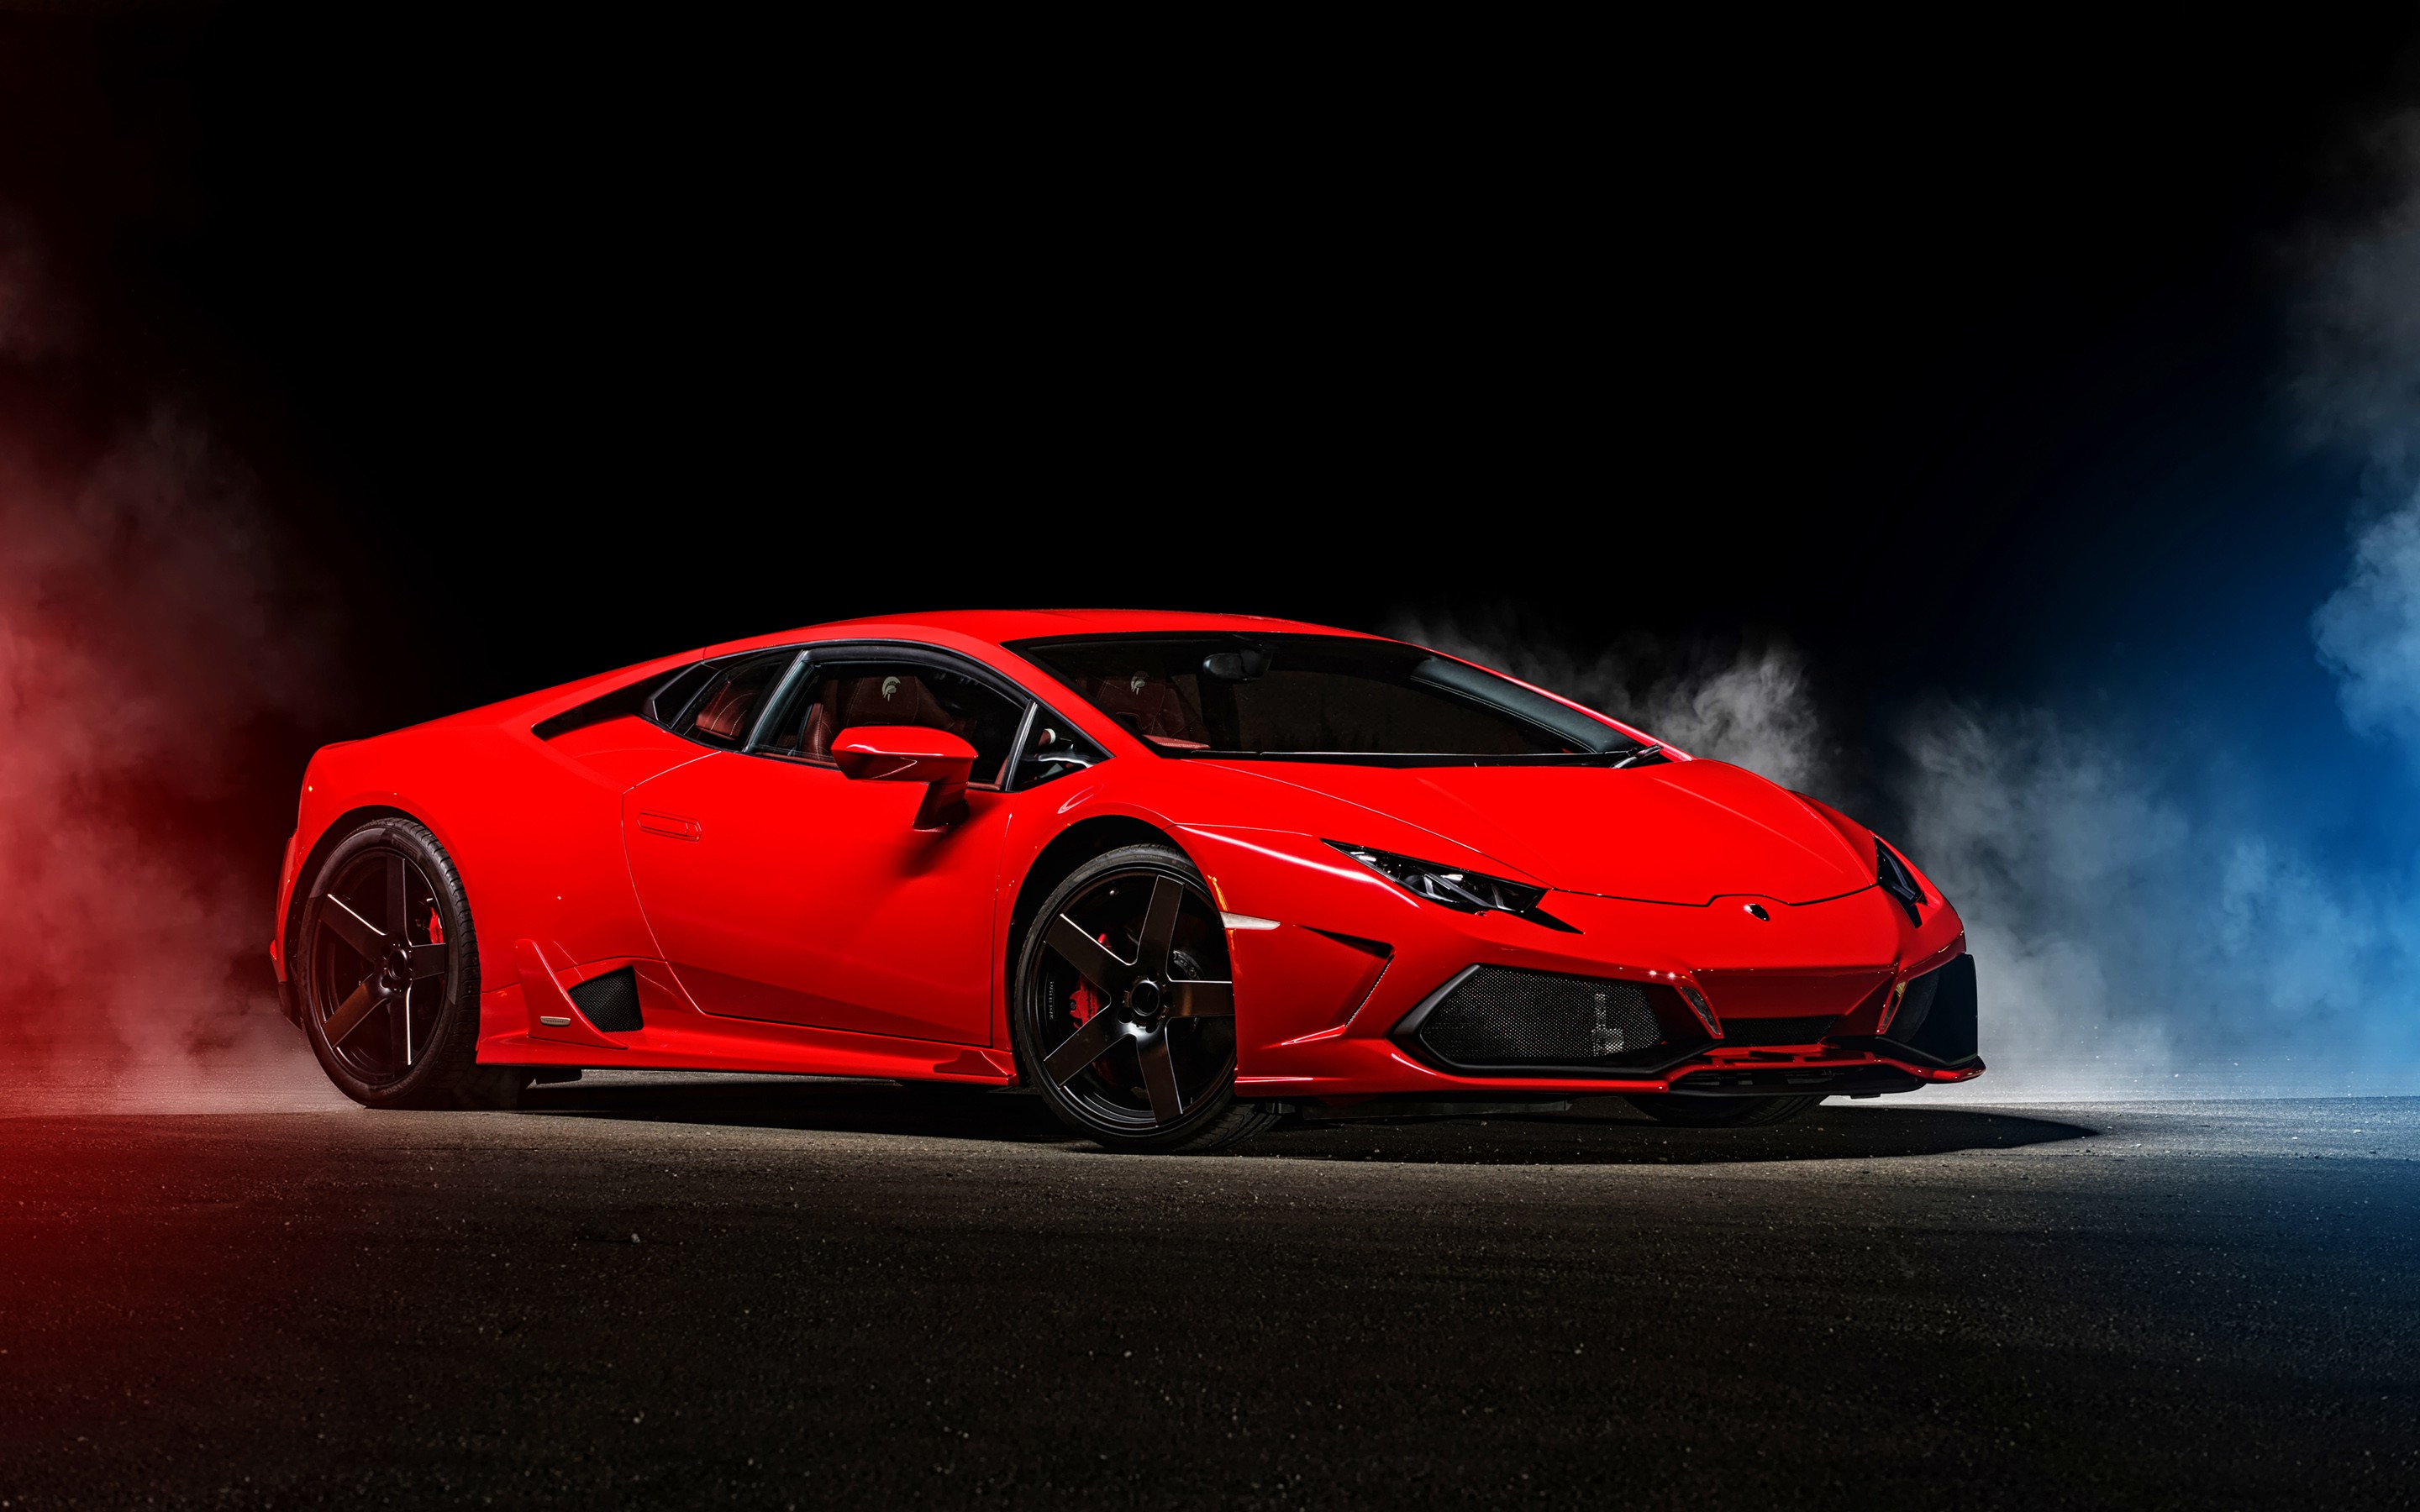 Lamborghini Huracan, HD Cars, 4k Wallpapers, Images ...